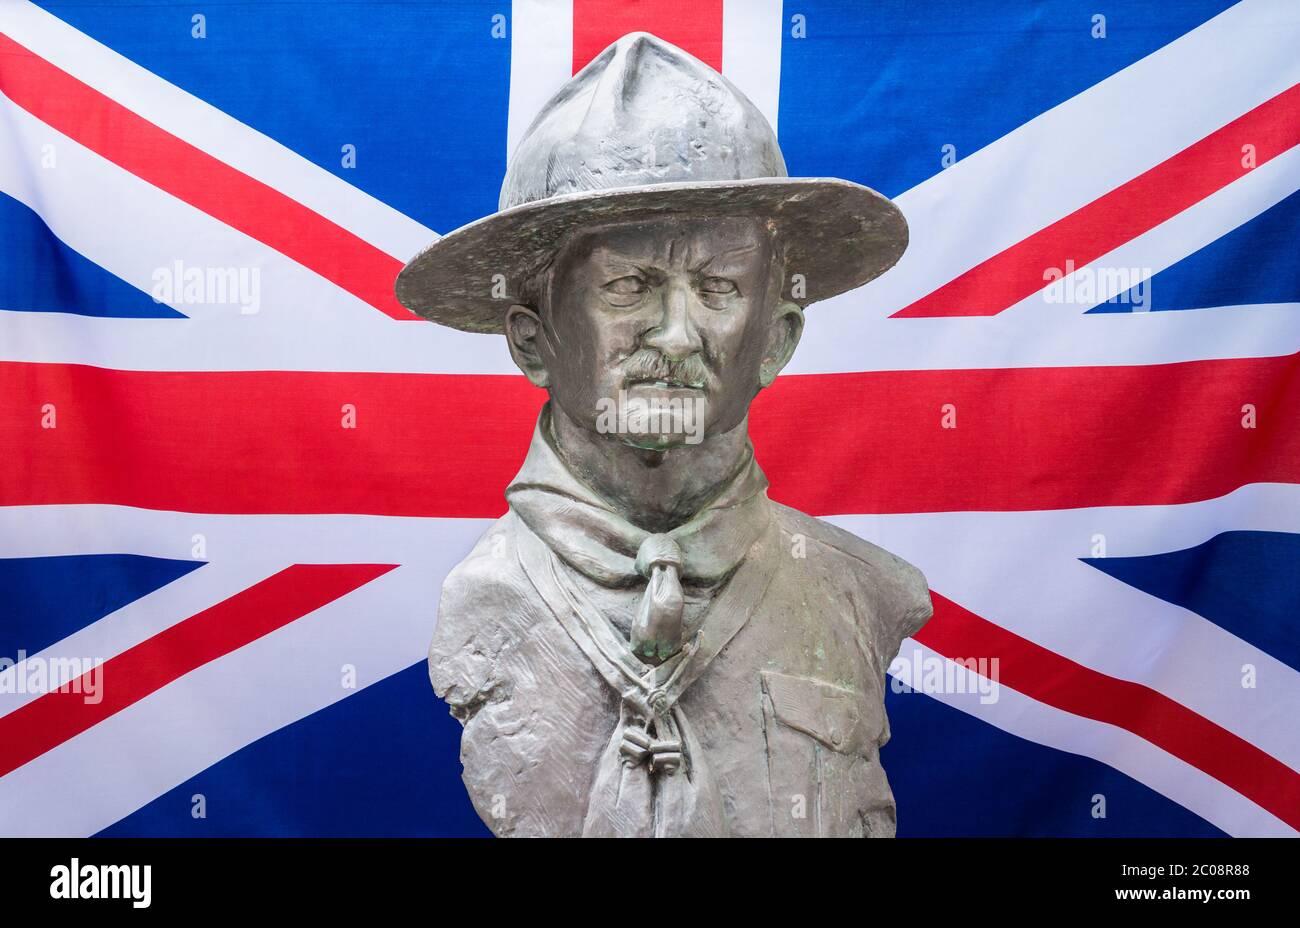 La sculpture de Robert Baden Powell a joué sur le drapeau britannique Union Jack. Banque D'Images